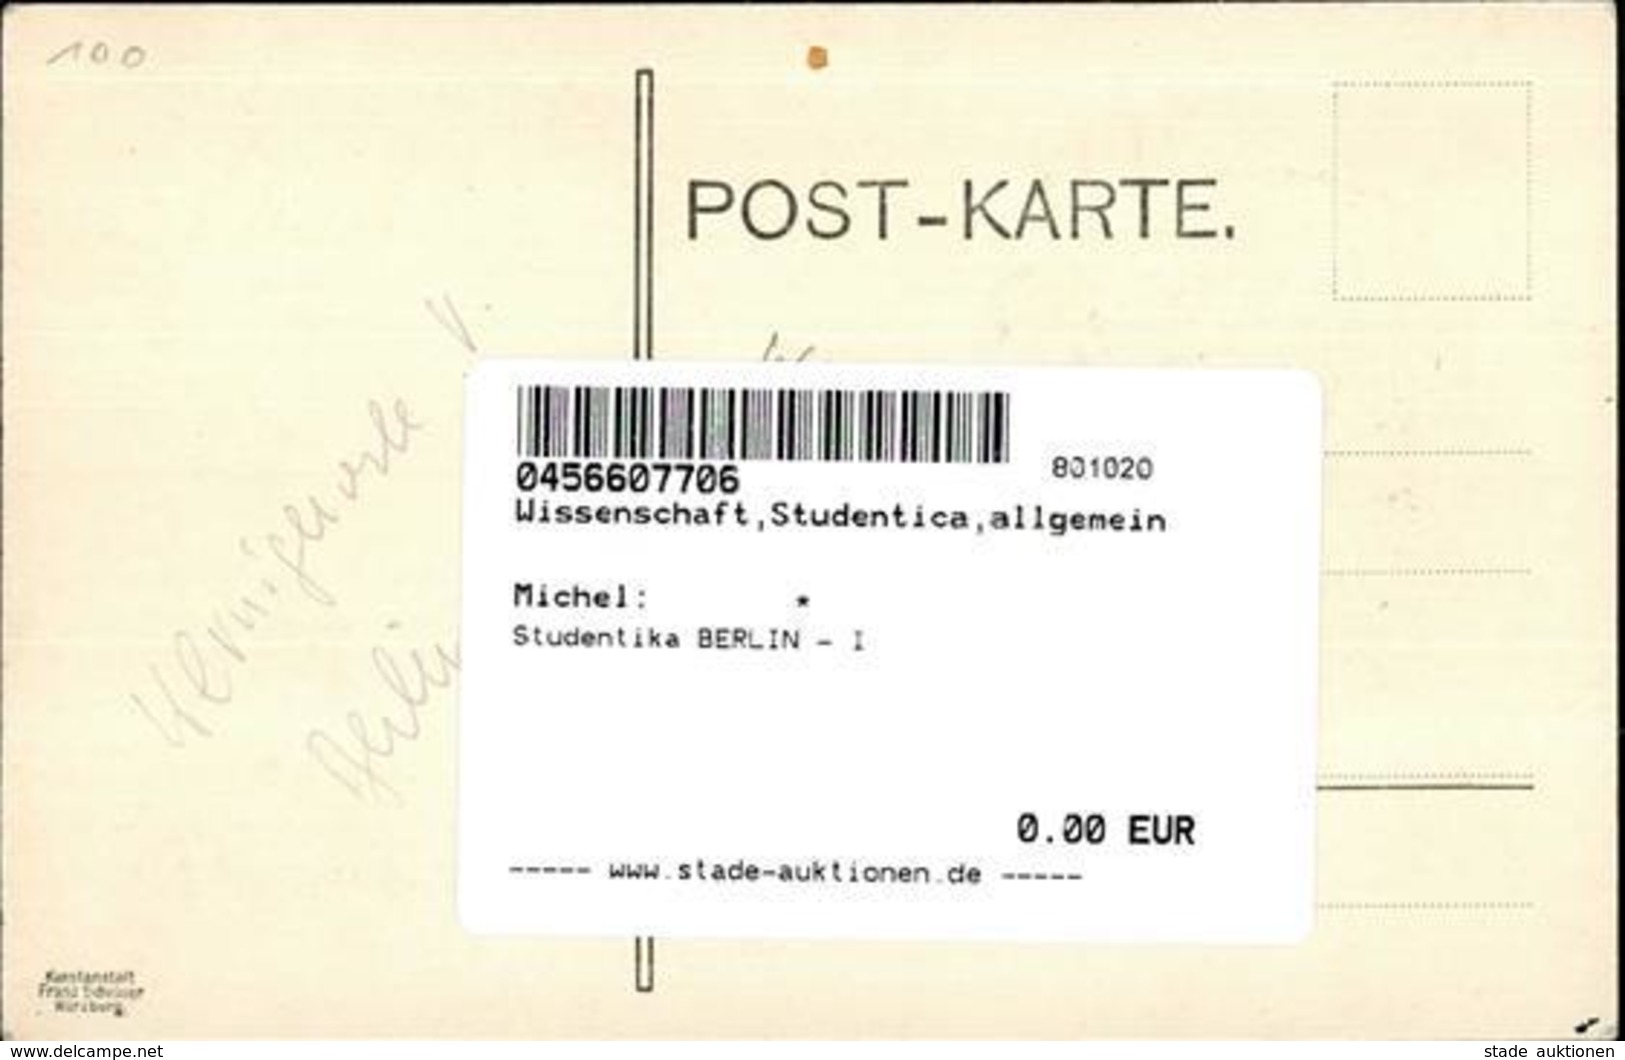 Studentika BERLIN - I - Schools